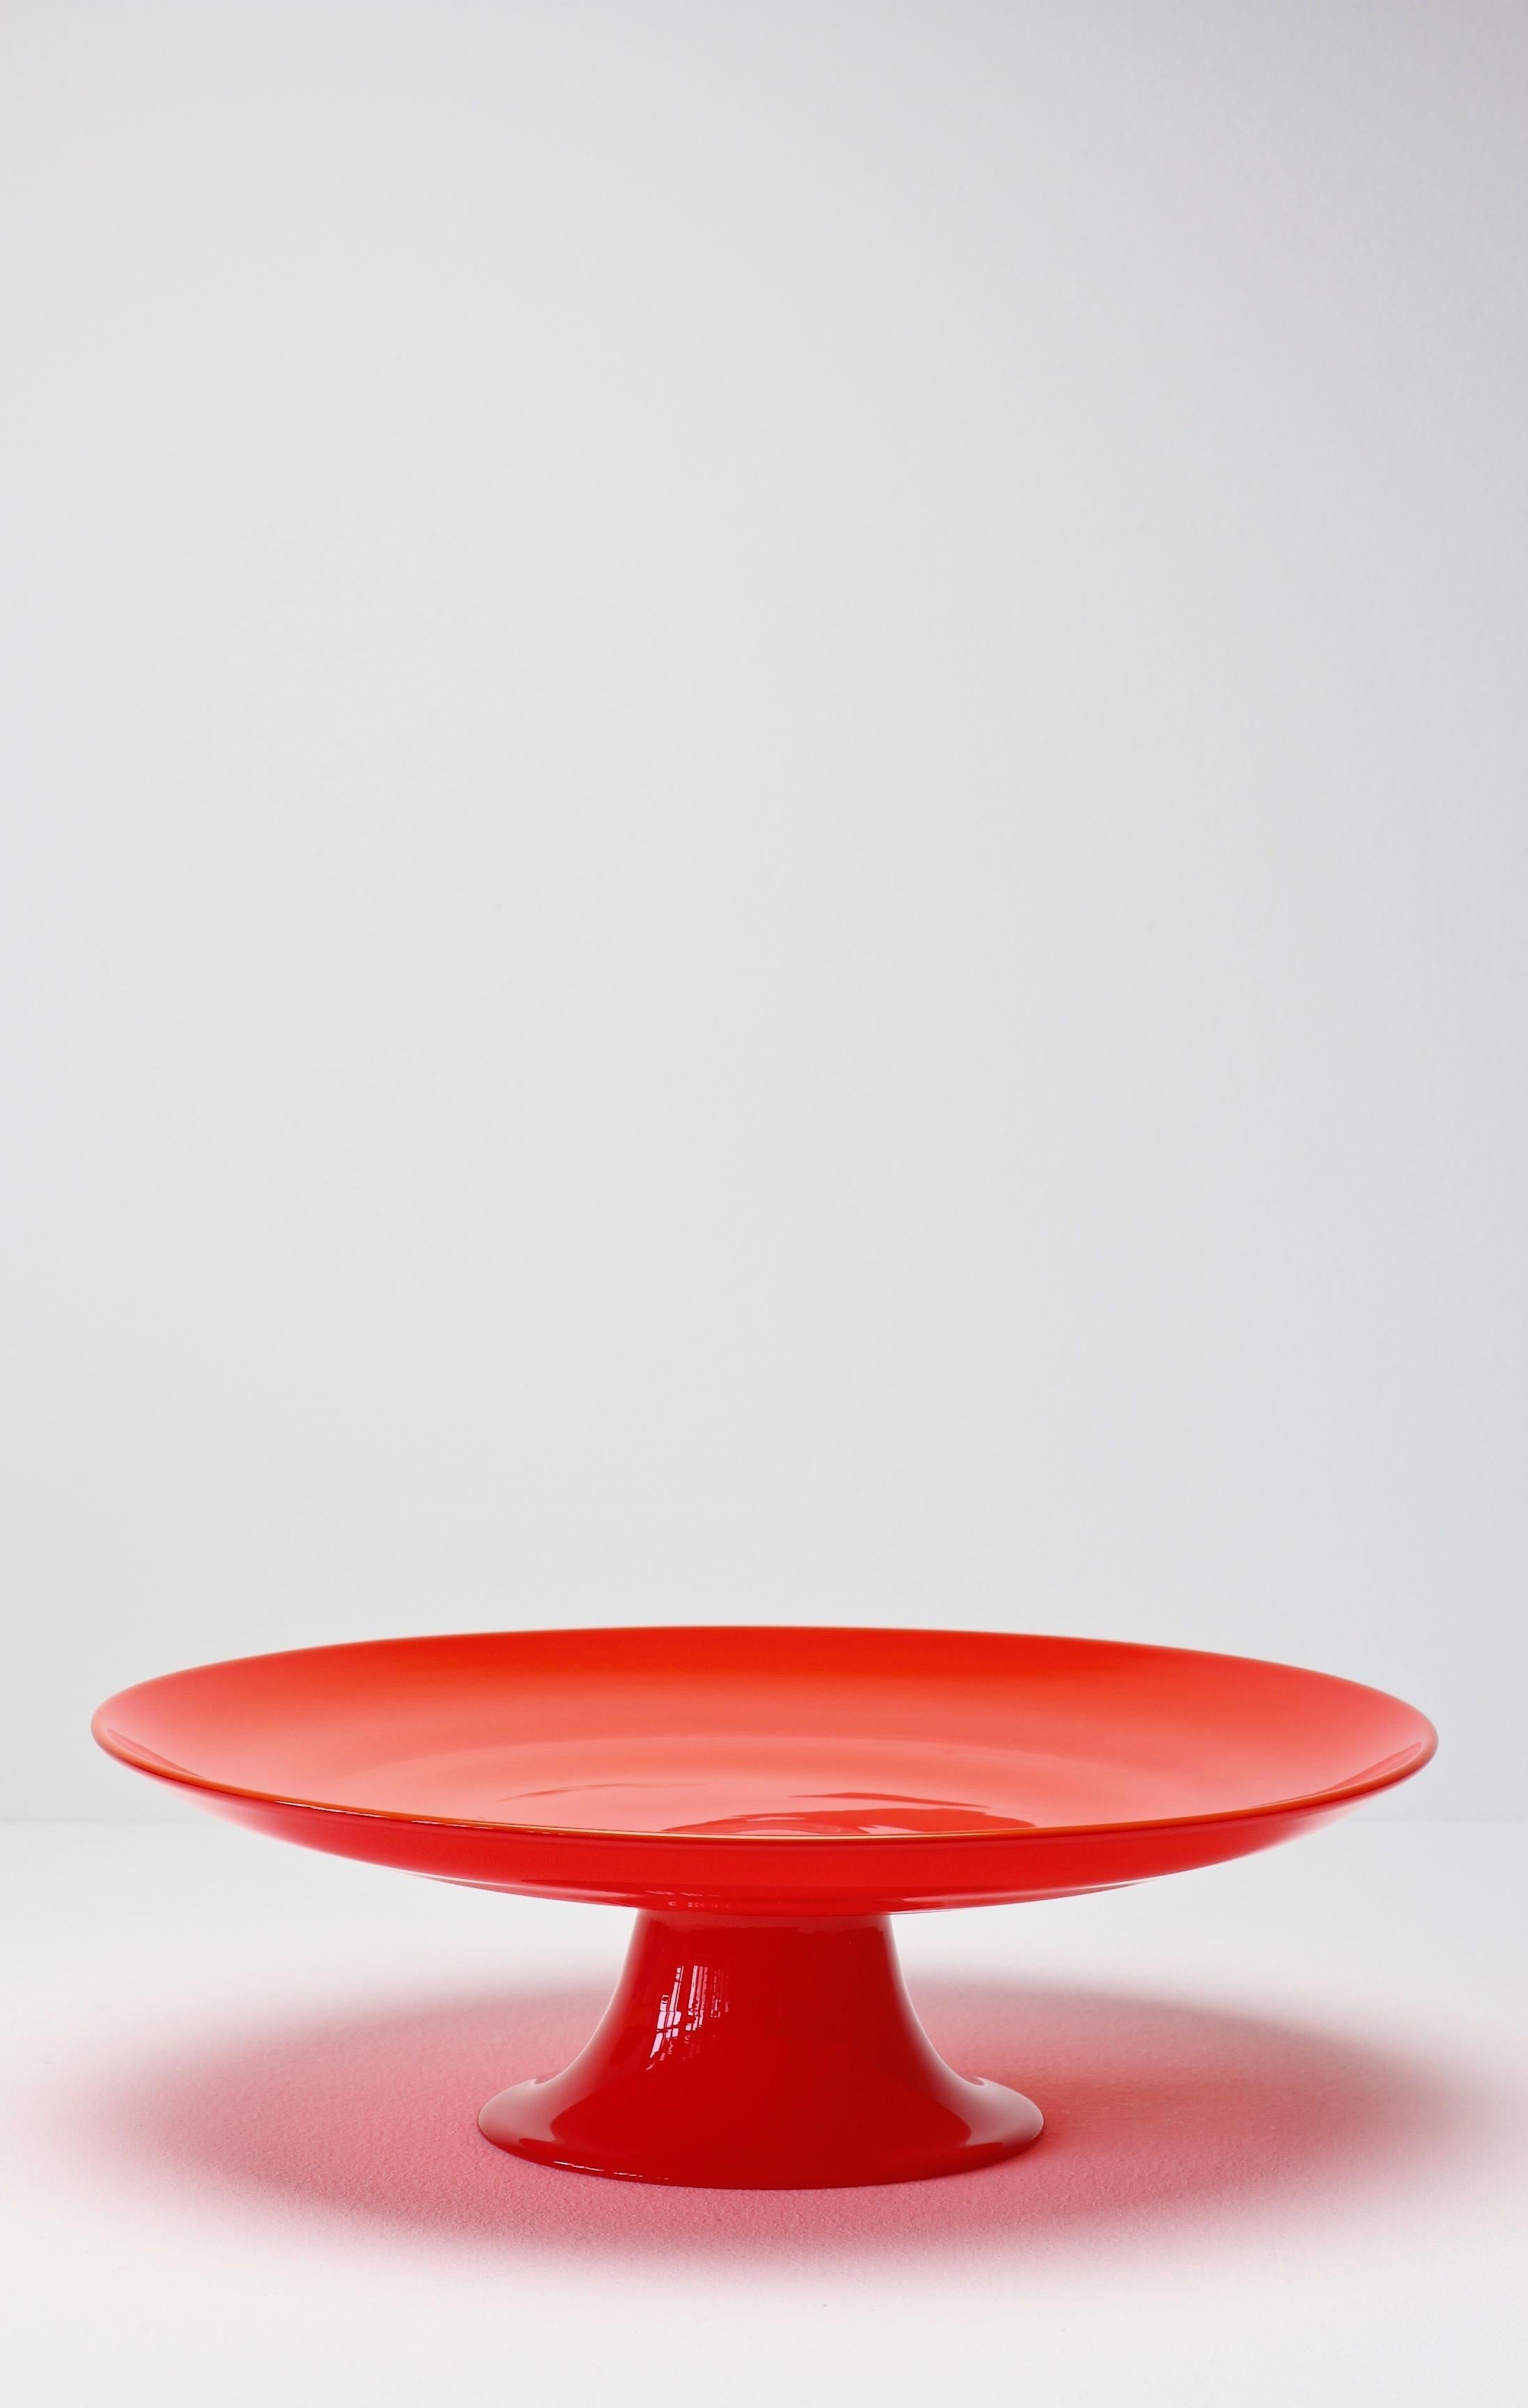 Seltener Tortenständer oder Servierteller aus Murano-Glas von Cenedese, ca. 1970-1990. Das Design stammt wahrscheinlich entweder von Antonio Da Ros oder Ermanno Nason. Wunderschöne Farbe in leuchtendem Rot und schlichte, aber elegante Form A. Mit